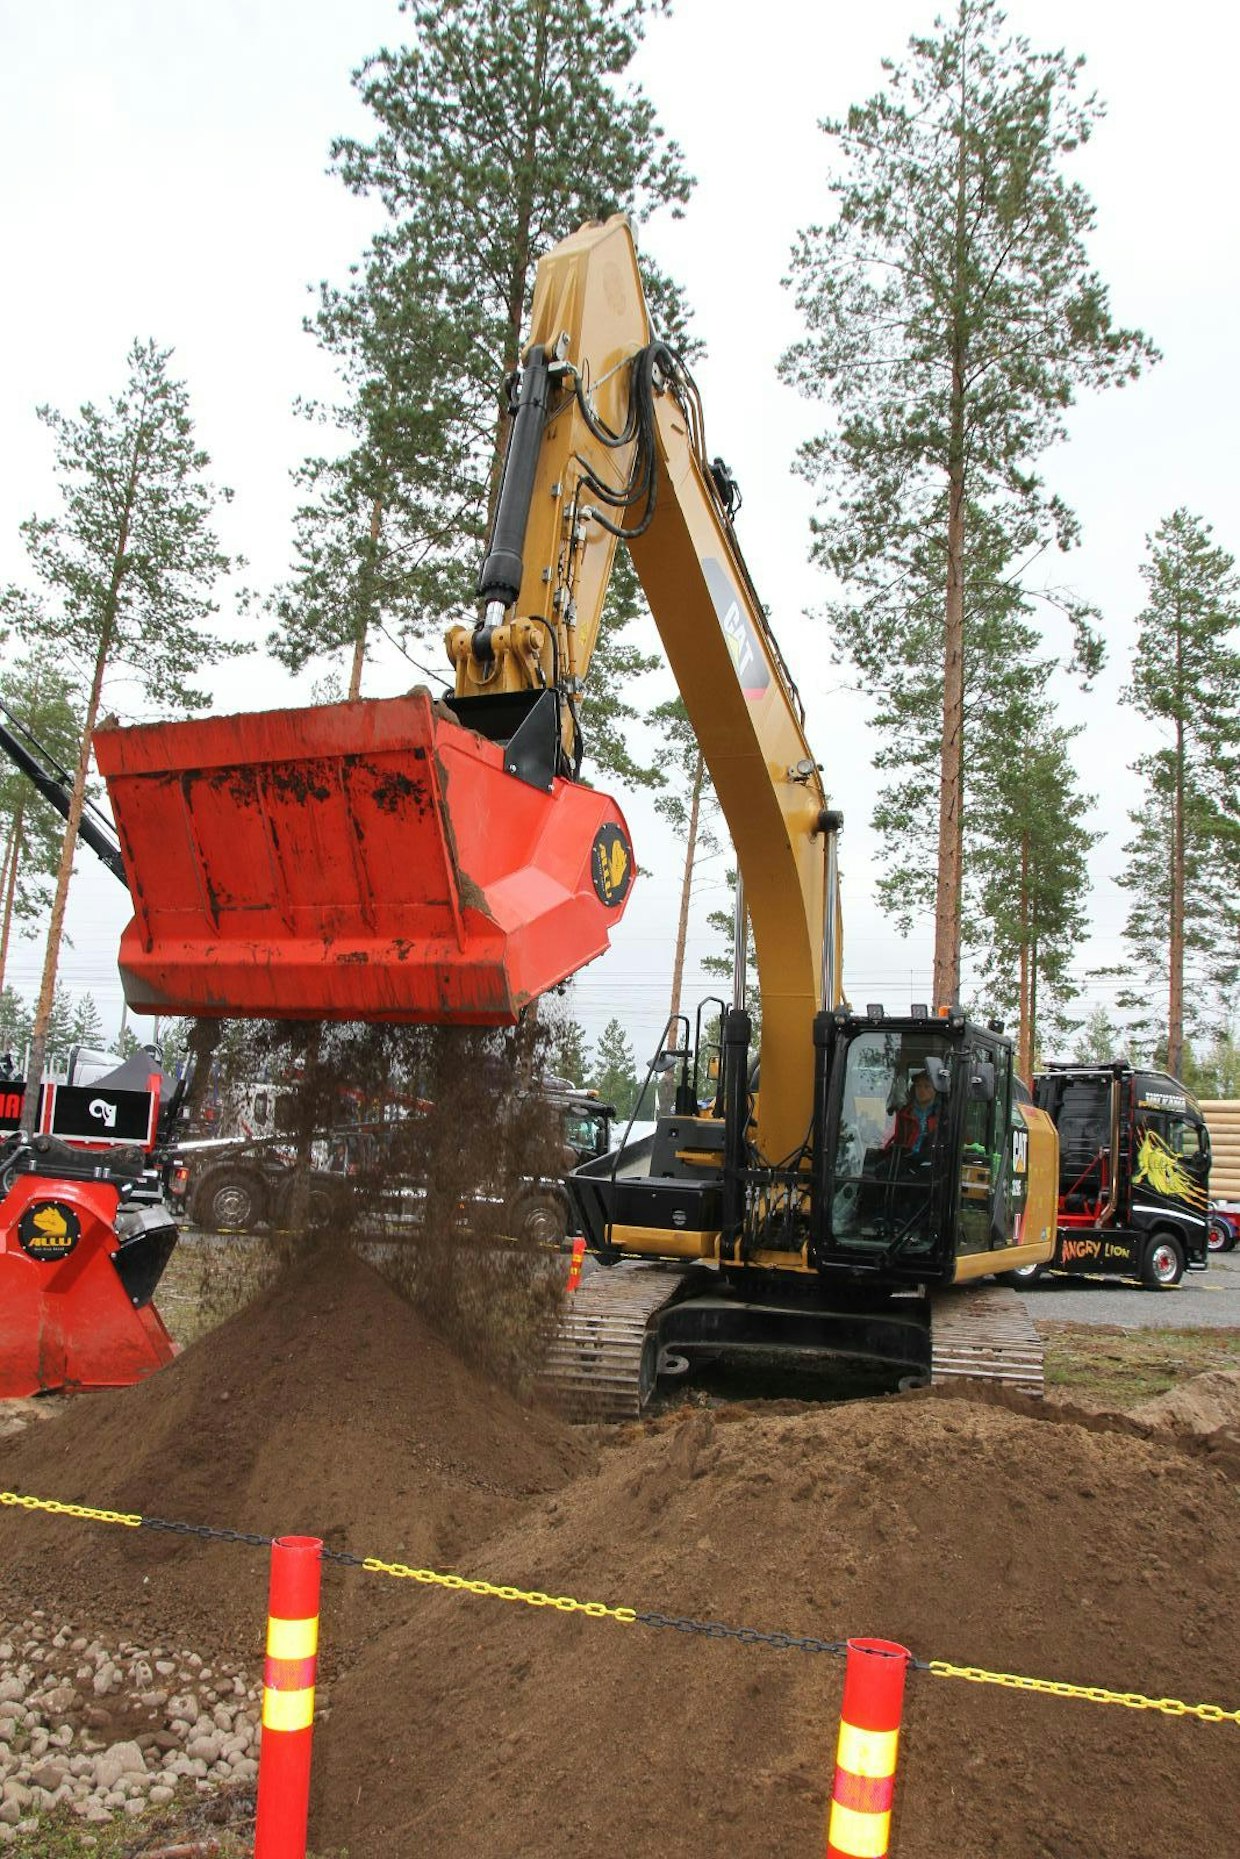 Työnäytökset olivat Metkon kiinnostavinta antia. Allu Finland Oy:n osastolla esiteltiin seulakauhojen ja seulamurskien toimintaa. Allun seulakauhat on tarkoitettu 4–45 tonnin työpainoisiin kaivukoneisiin. Seulakauhat soveltuvat jätemateriaalin, kompostin ja pintamaan käsittelyyn sekä putkilinjojen täyttöön ja maisemointiin. (TR)